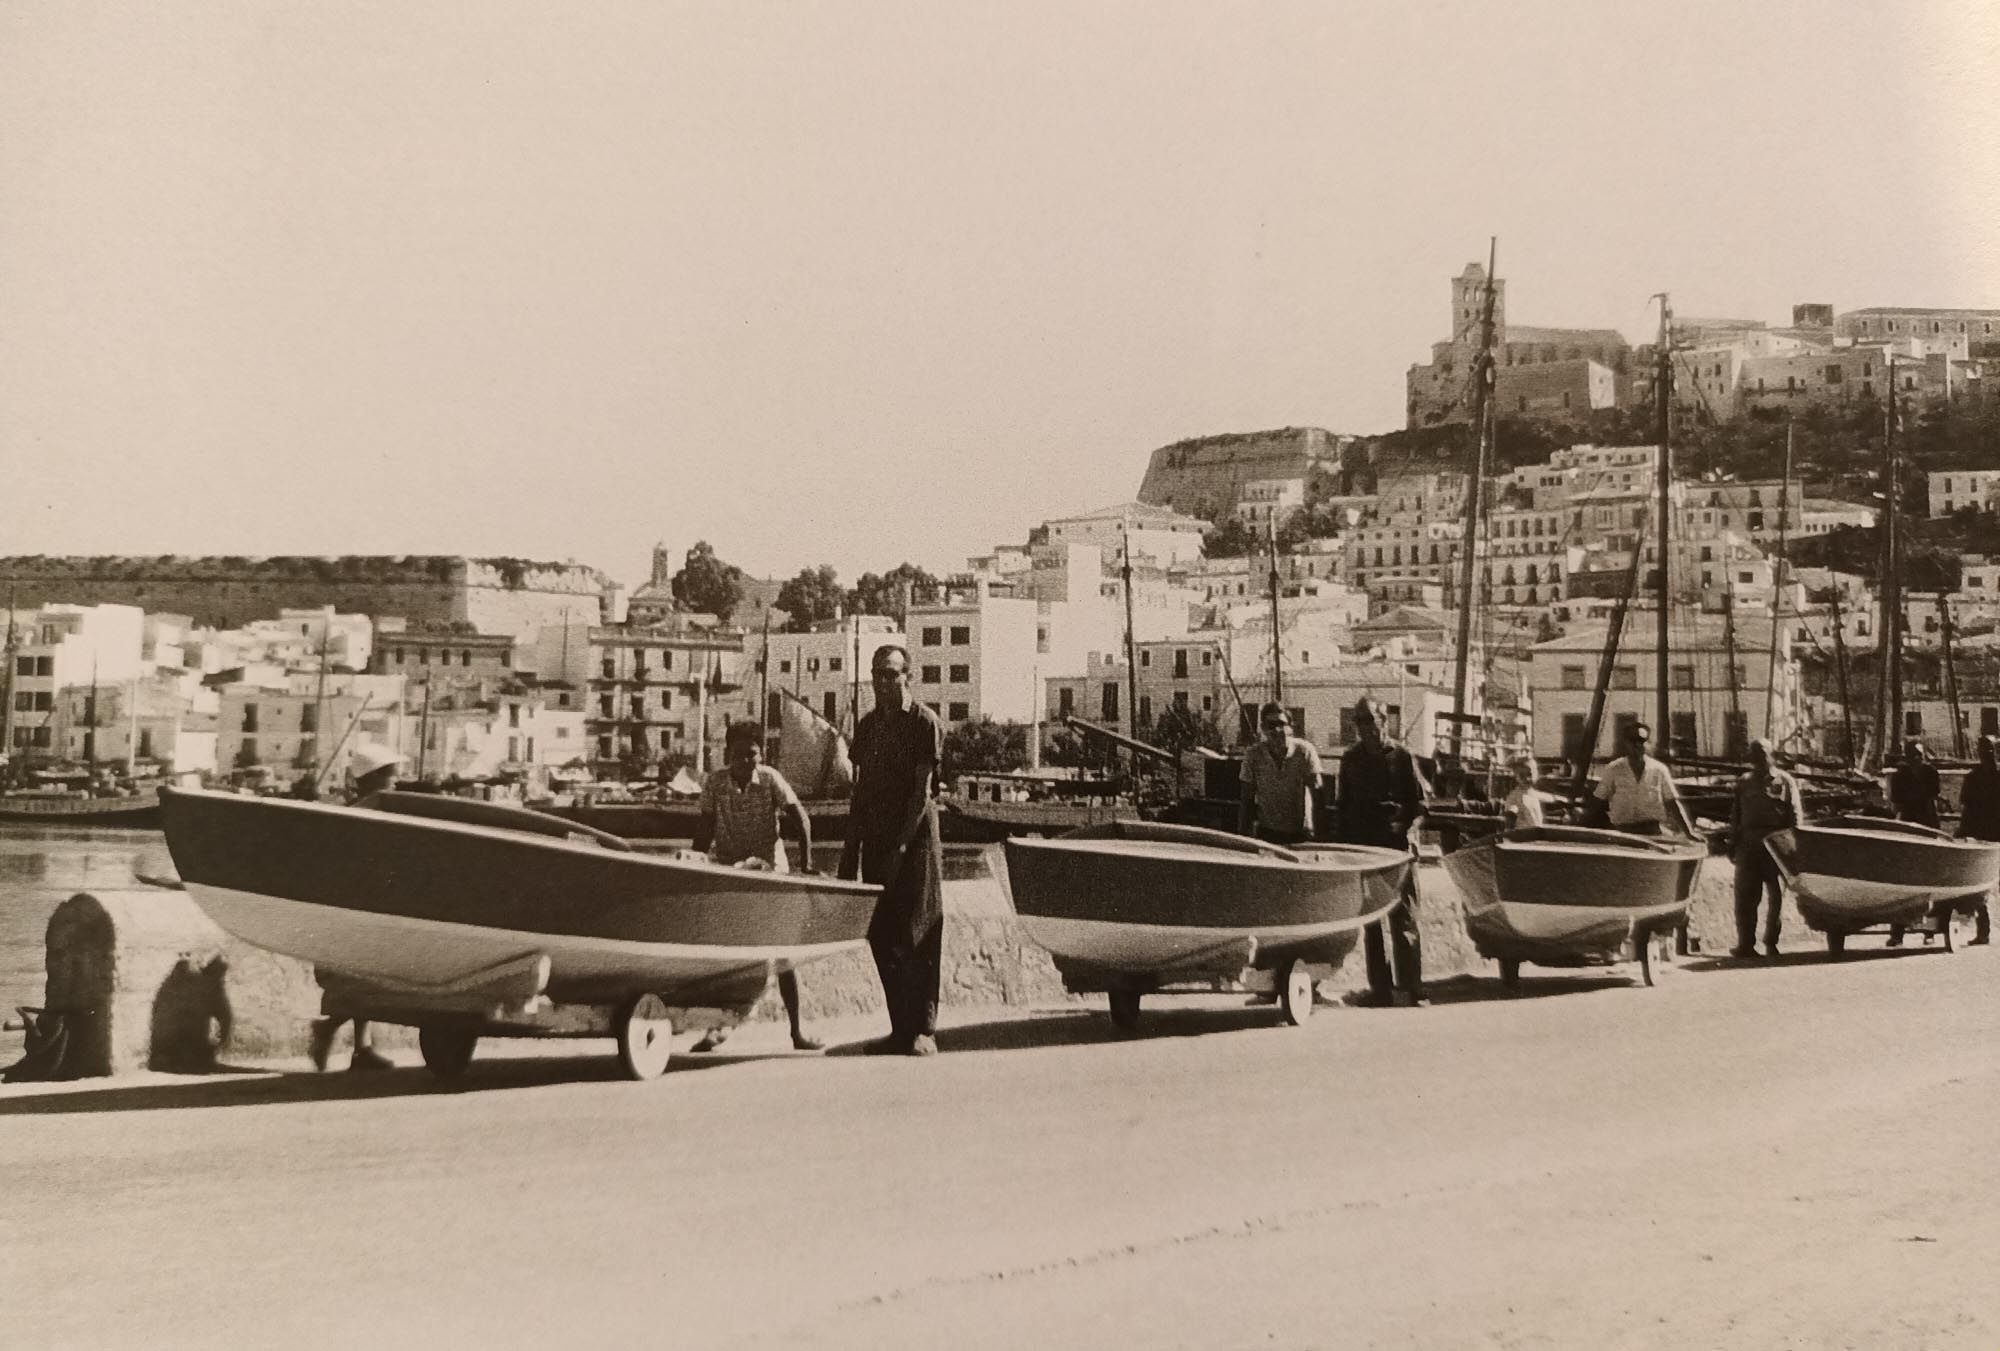 Snipes fabricados en Ibiza (1945).